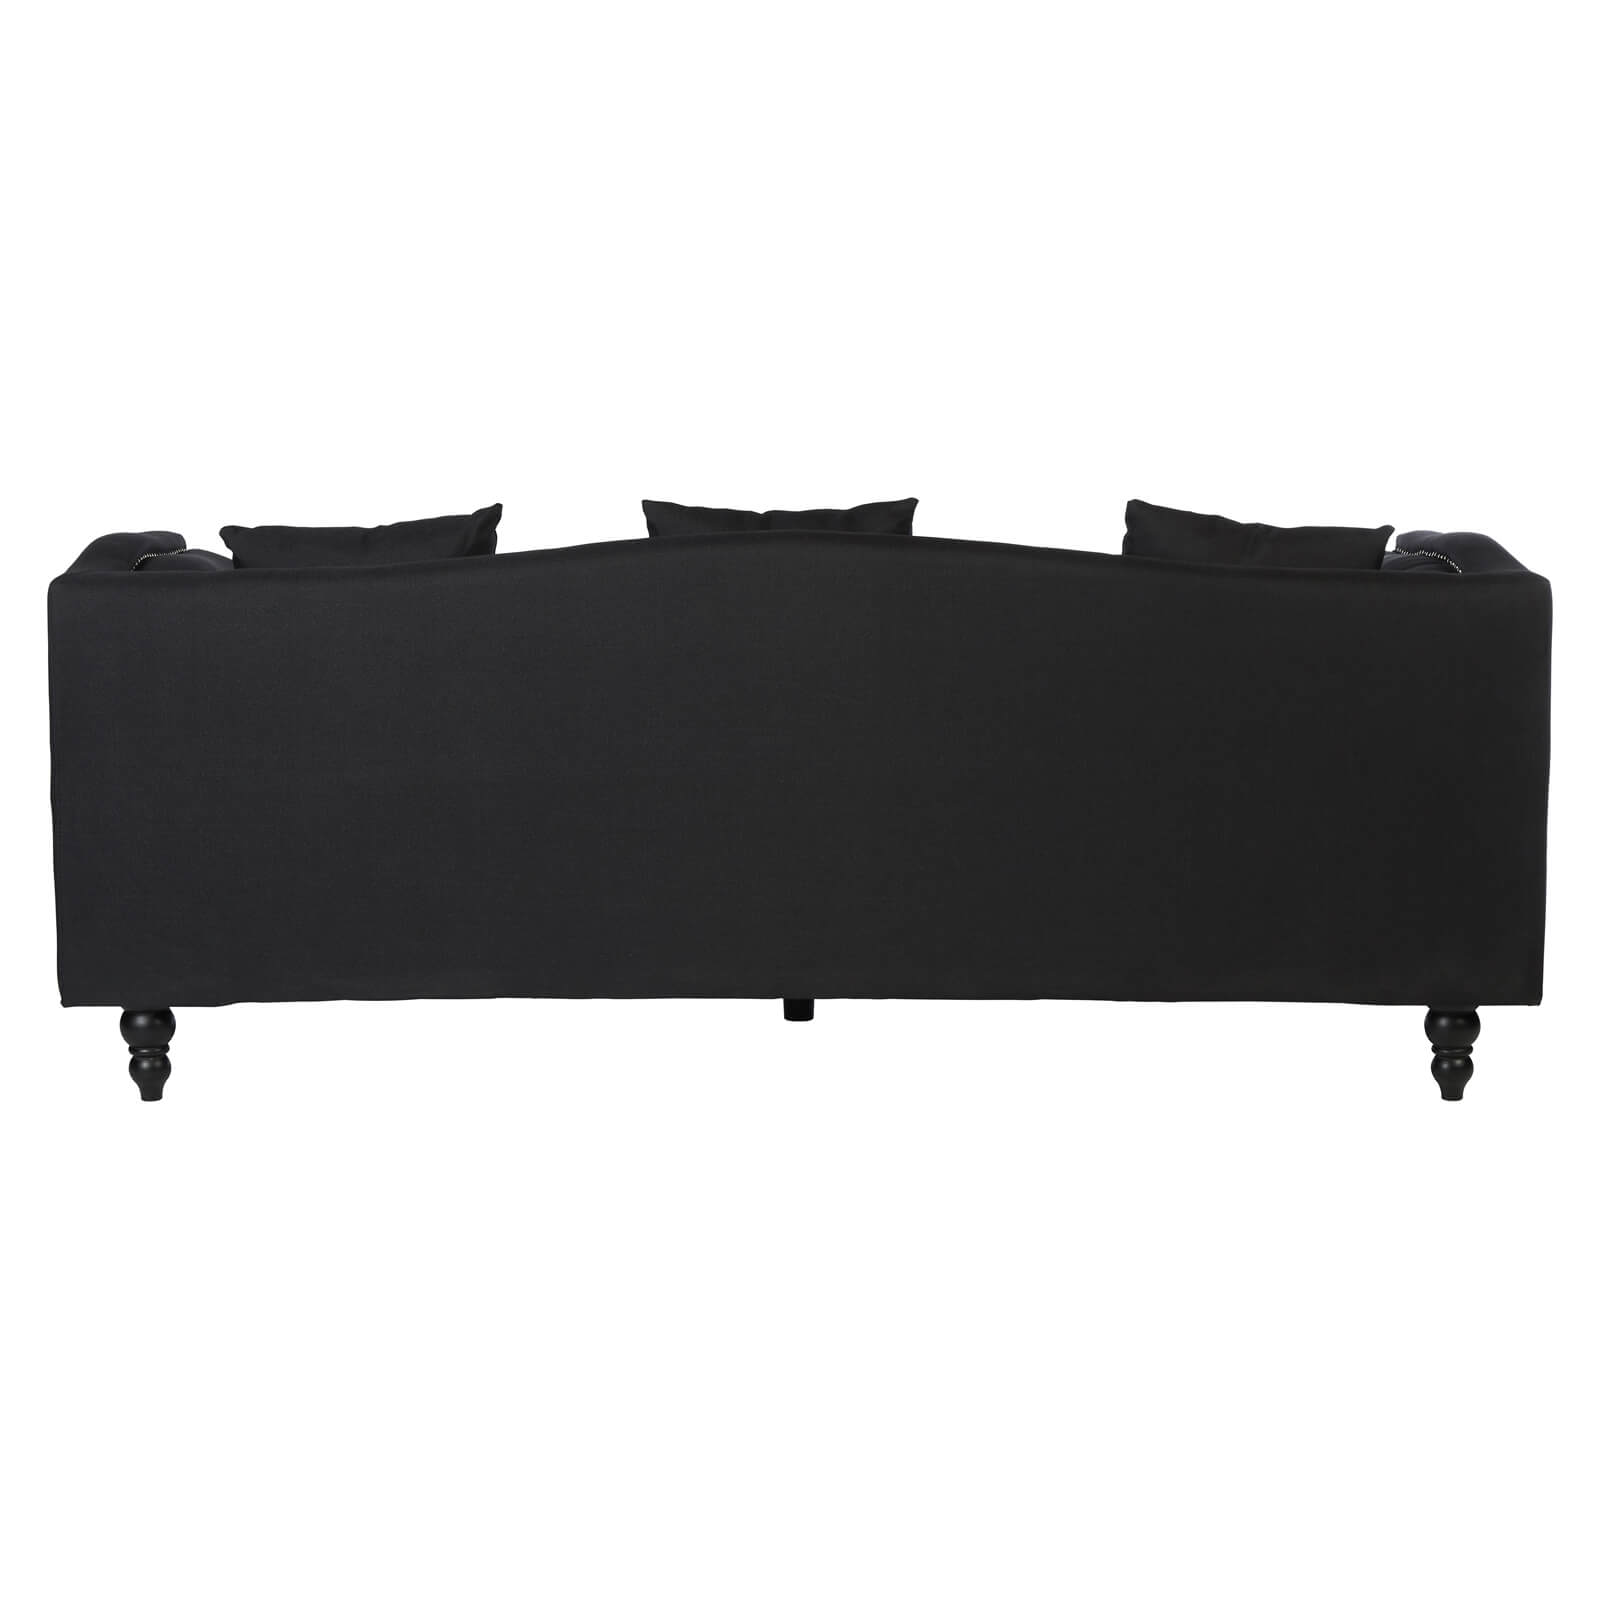 Feya 3 Seat Fabric Sofa - Black